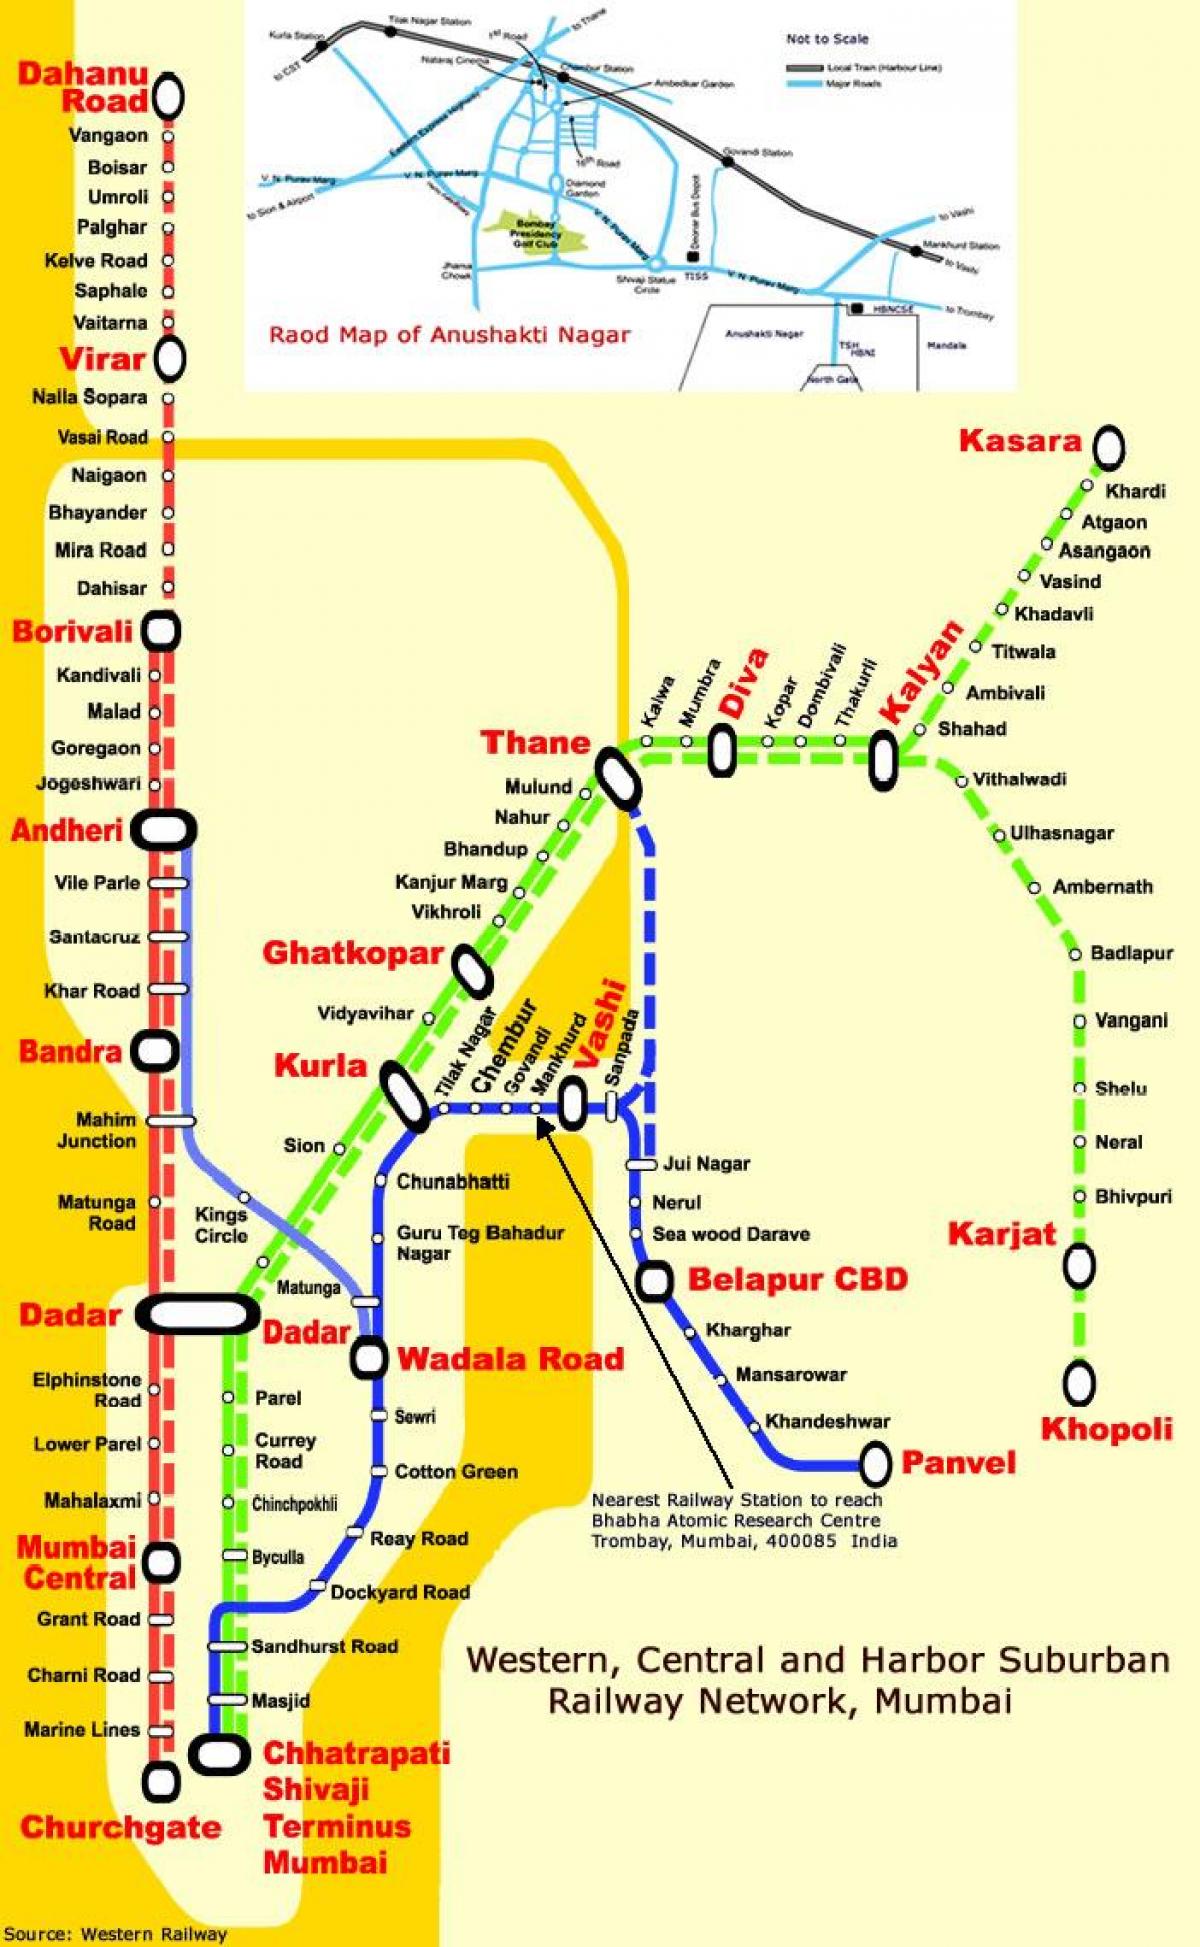 મુંબઇ સેન્ટ્રલ વાક્ય સ્ટેશનો નકશો